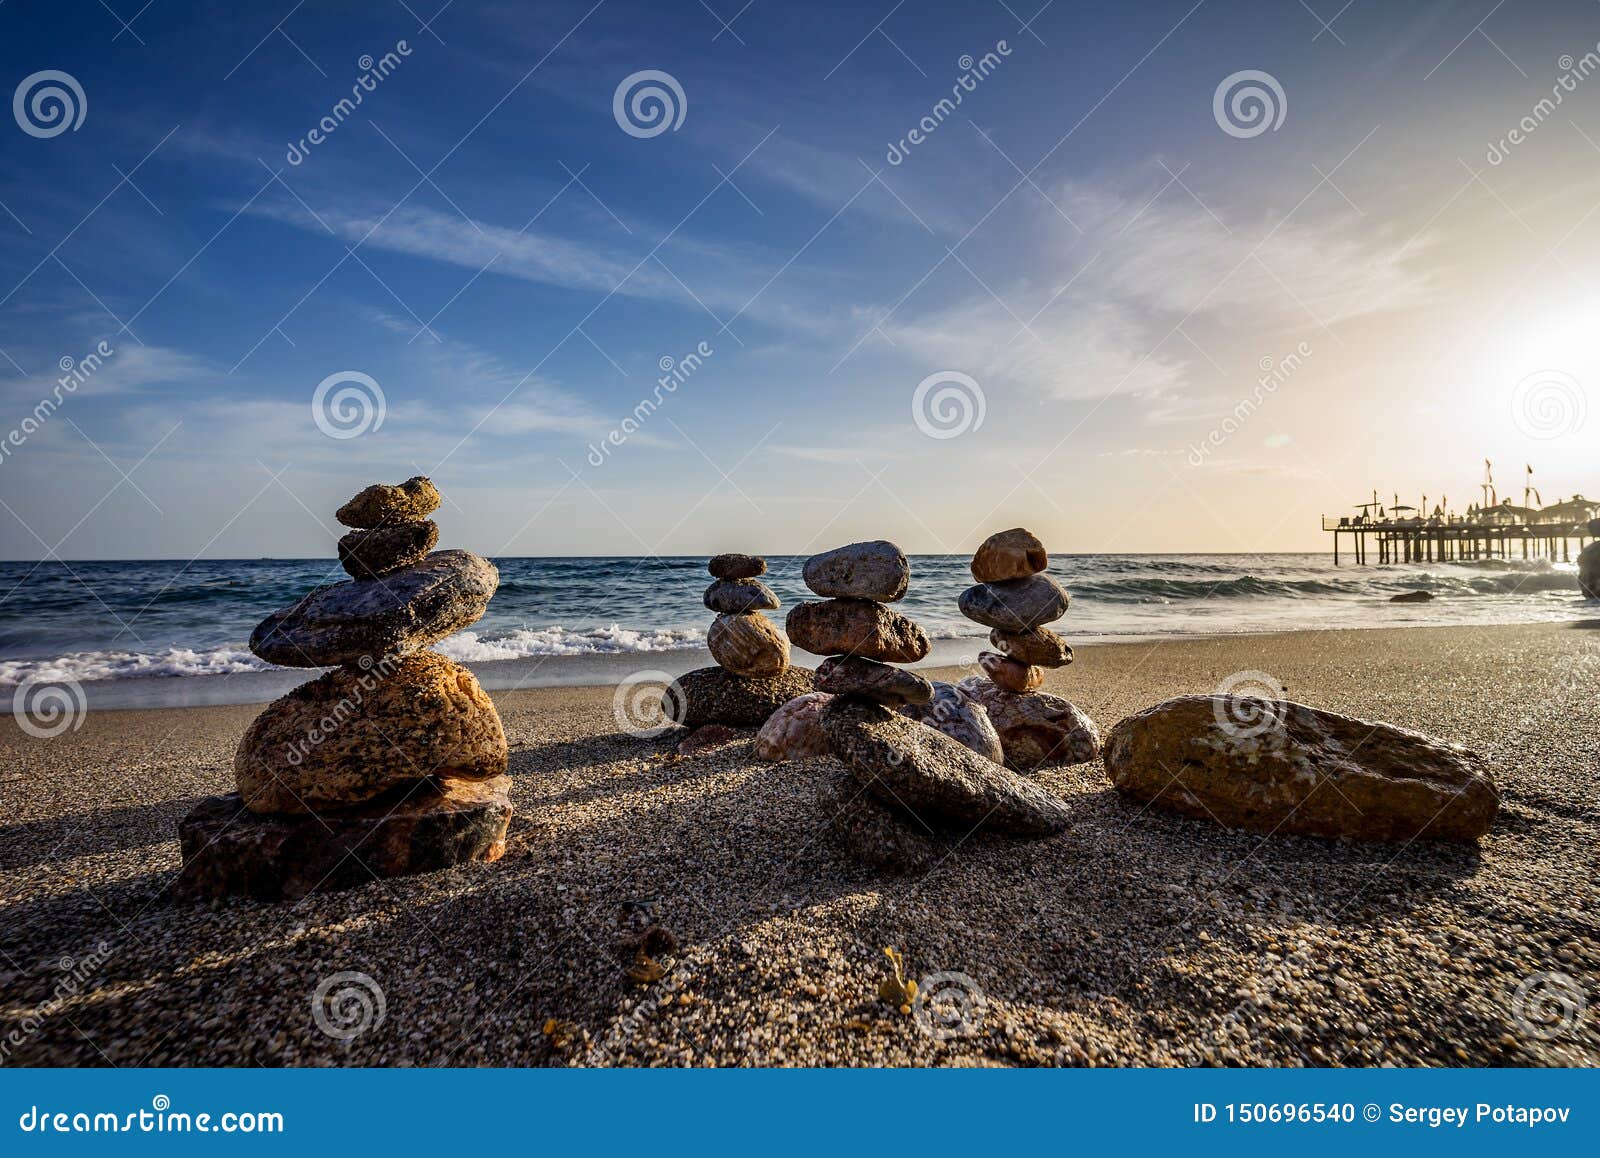 Диаграммы камней на пляже Пляж, солнце, волна Красиво положенные камни на пляже